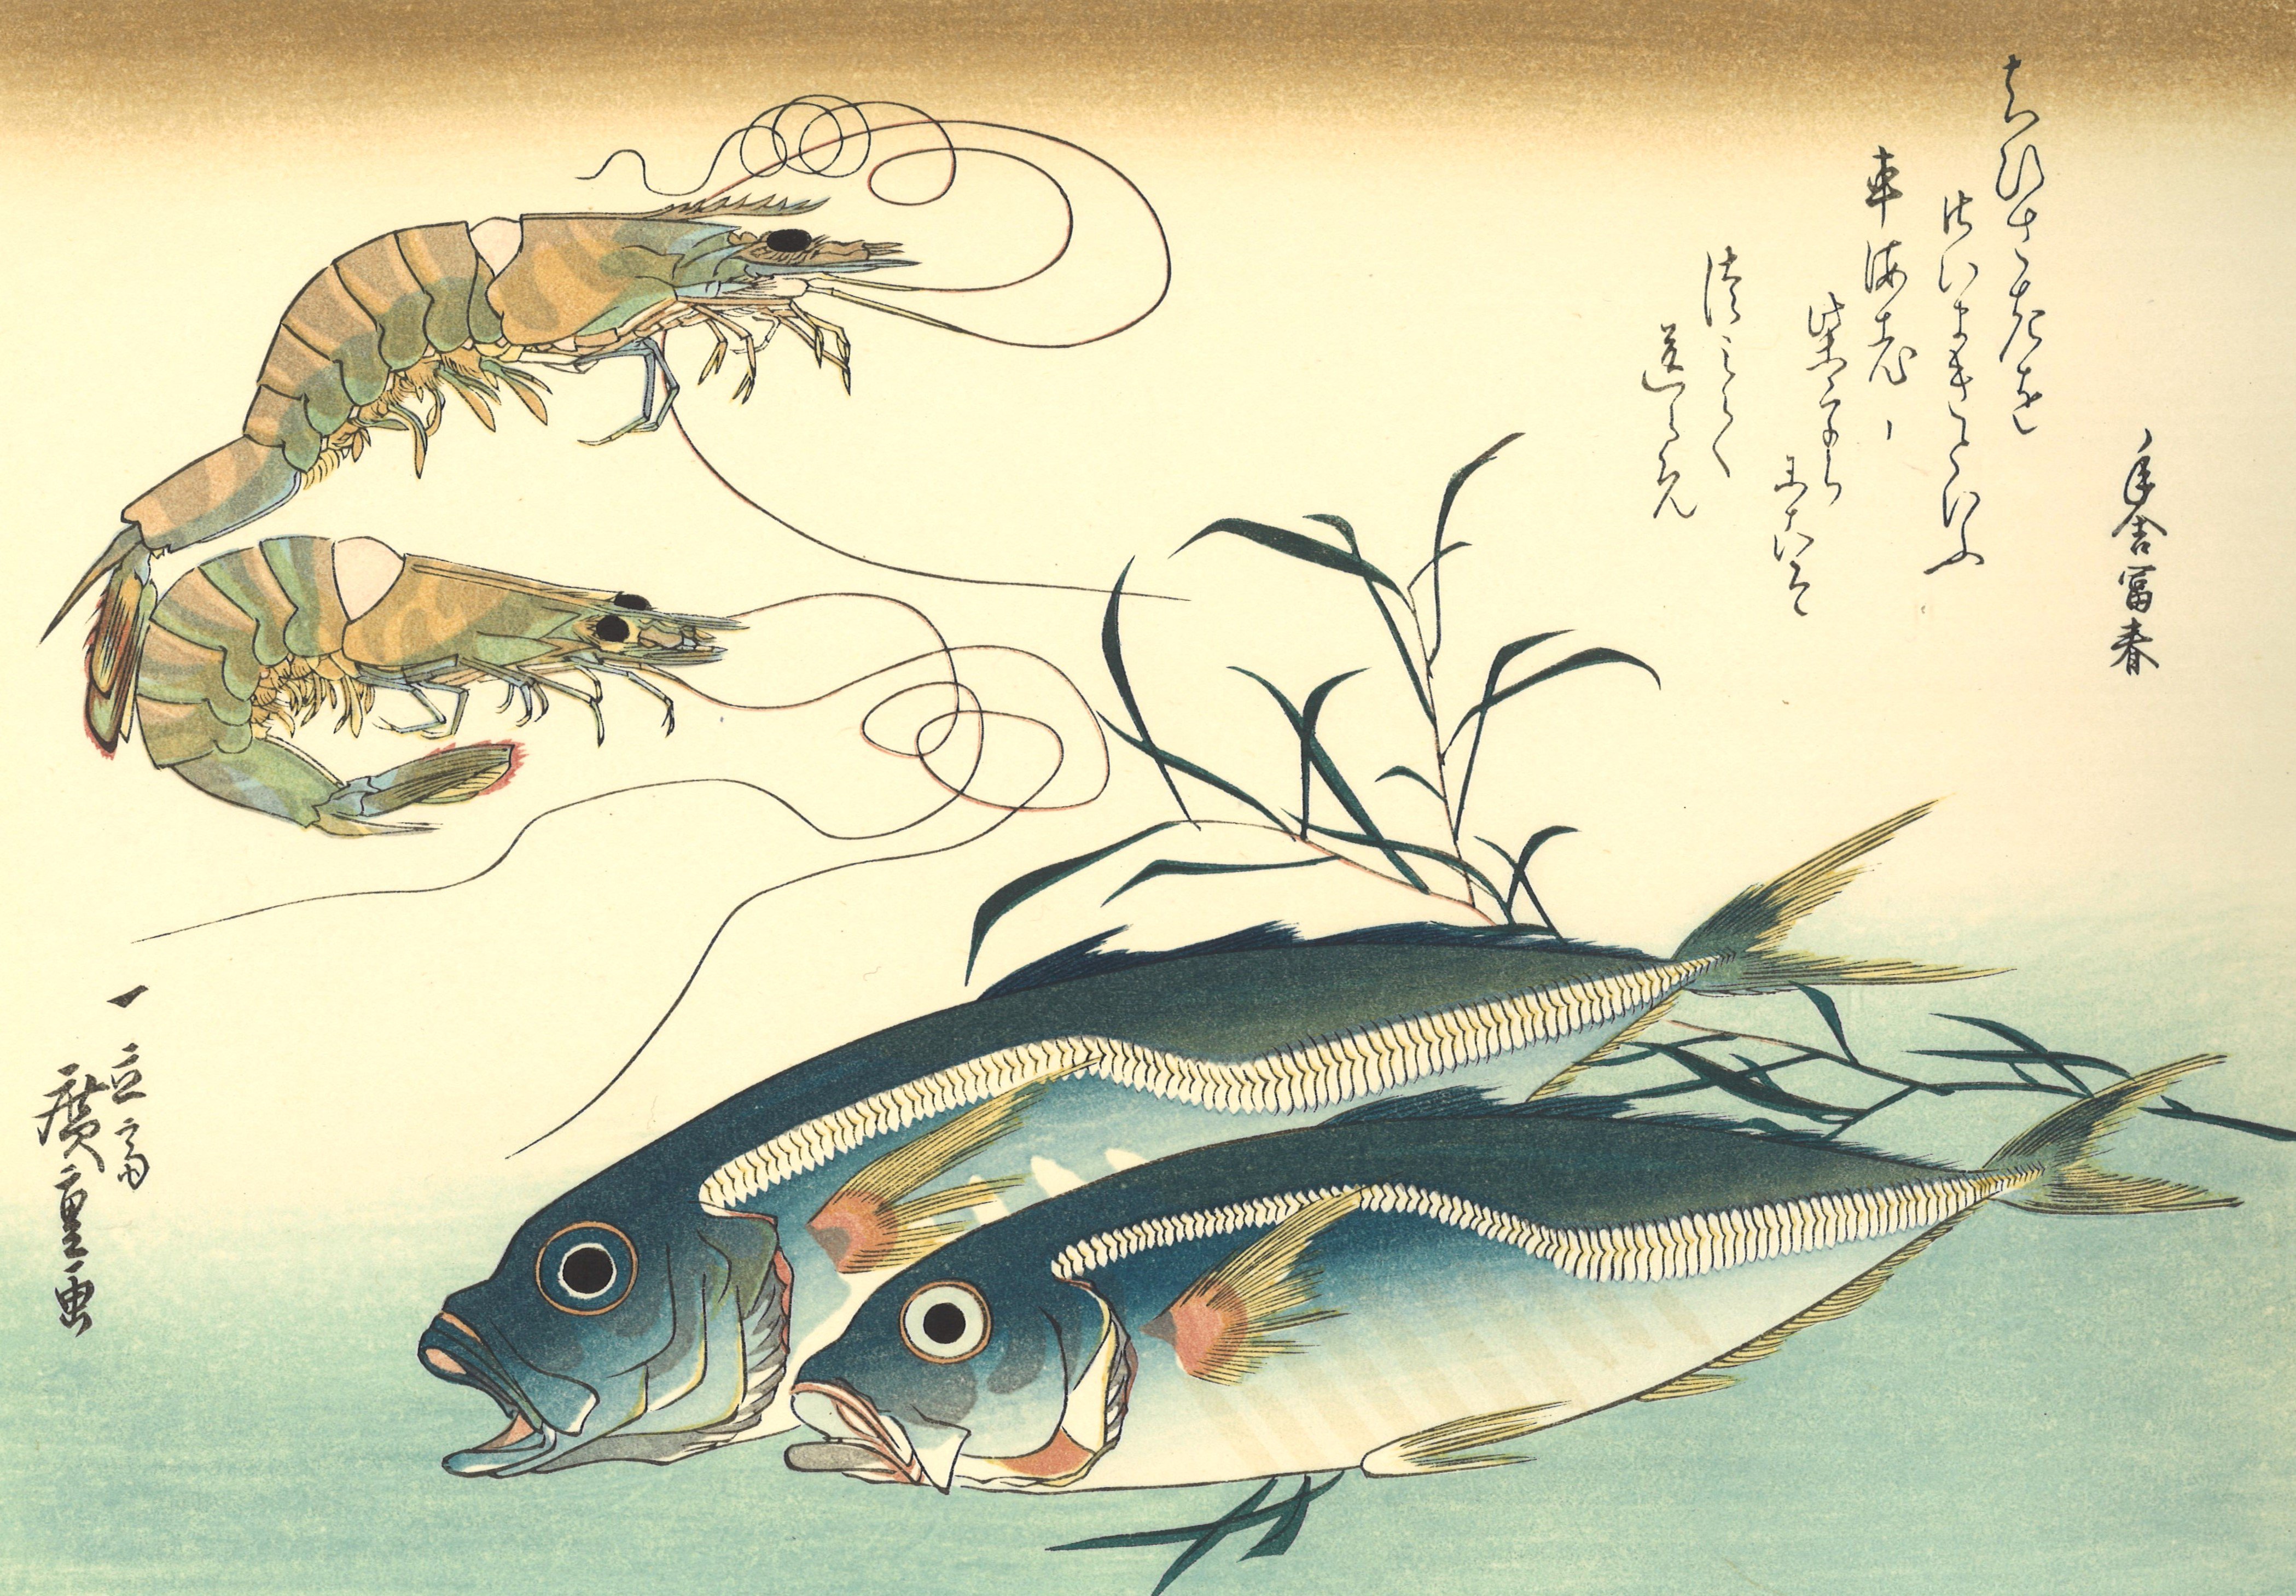 日本画 坂田虎一 光風会 魚の絵 肉筆 木板画 額縁にガラス無し 昭和 